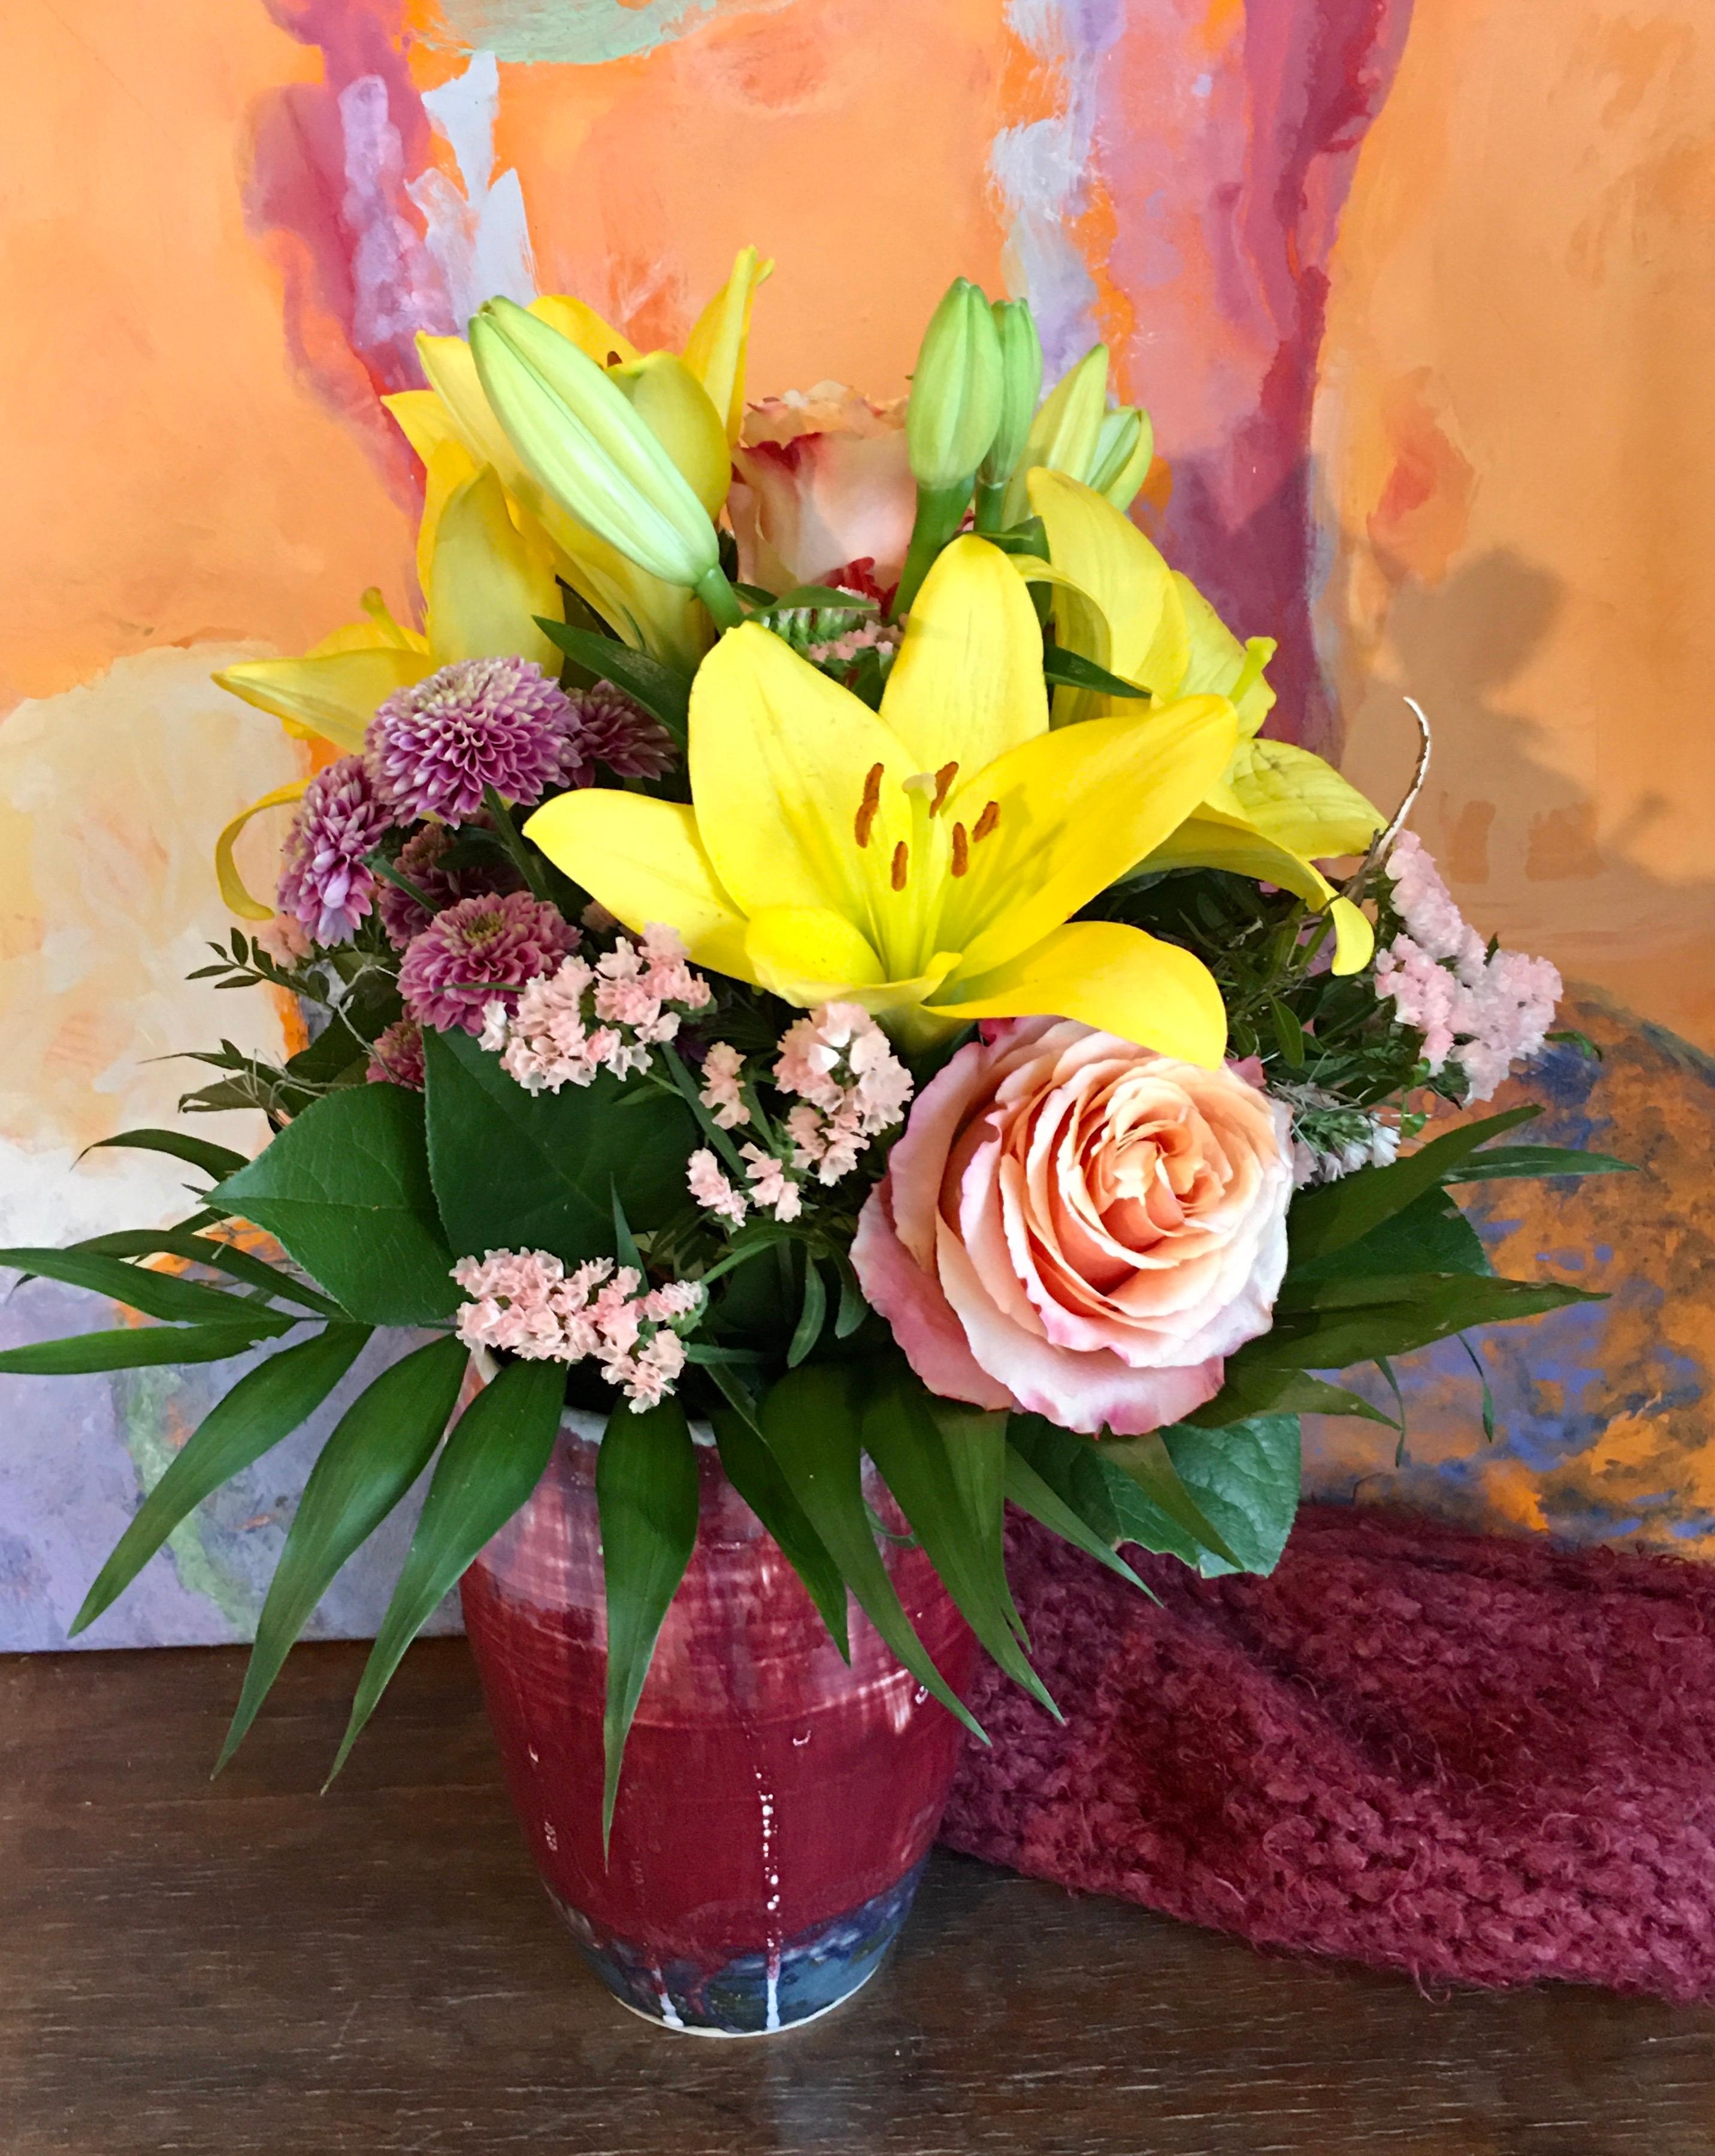 Frühling auf meiner Anrichte-Vase+Bild -selbstgetöpfert/gemalt- #farbe #keramik #frühling #farbe #blumen #wochenende